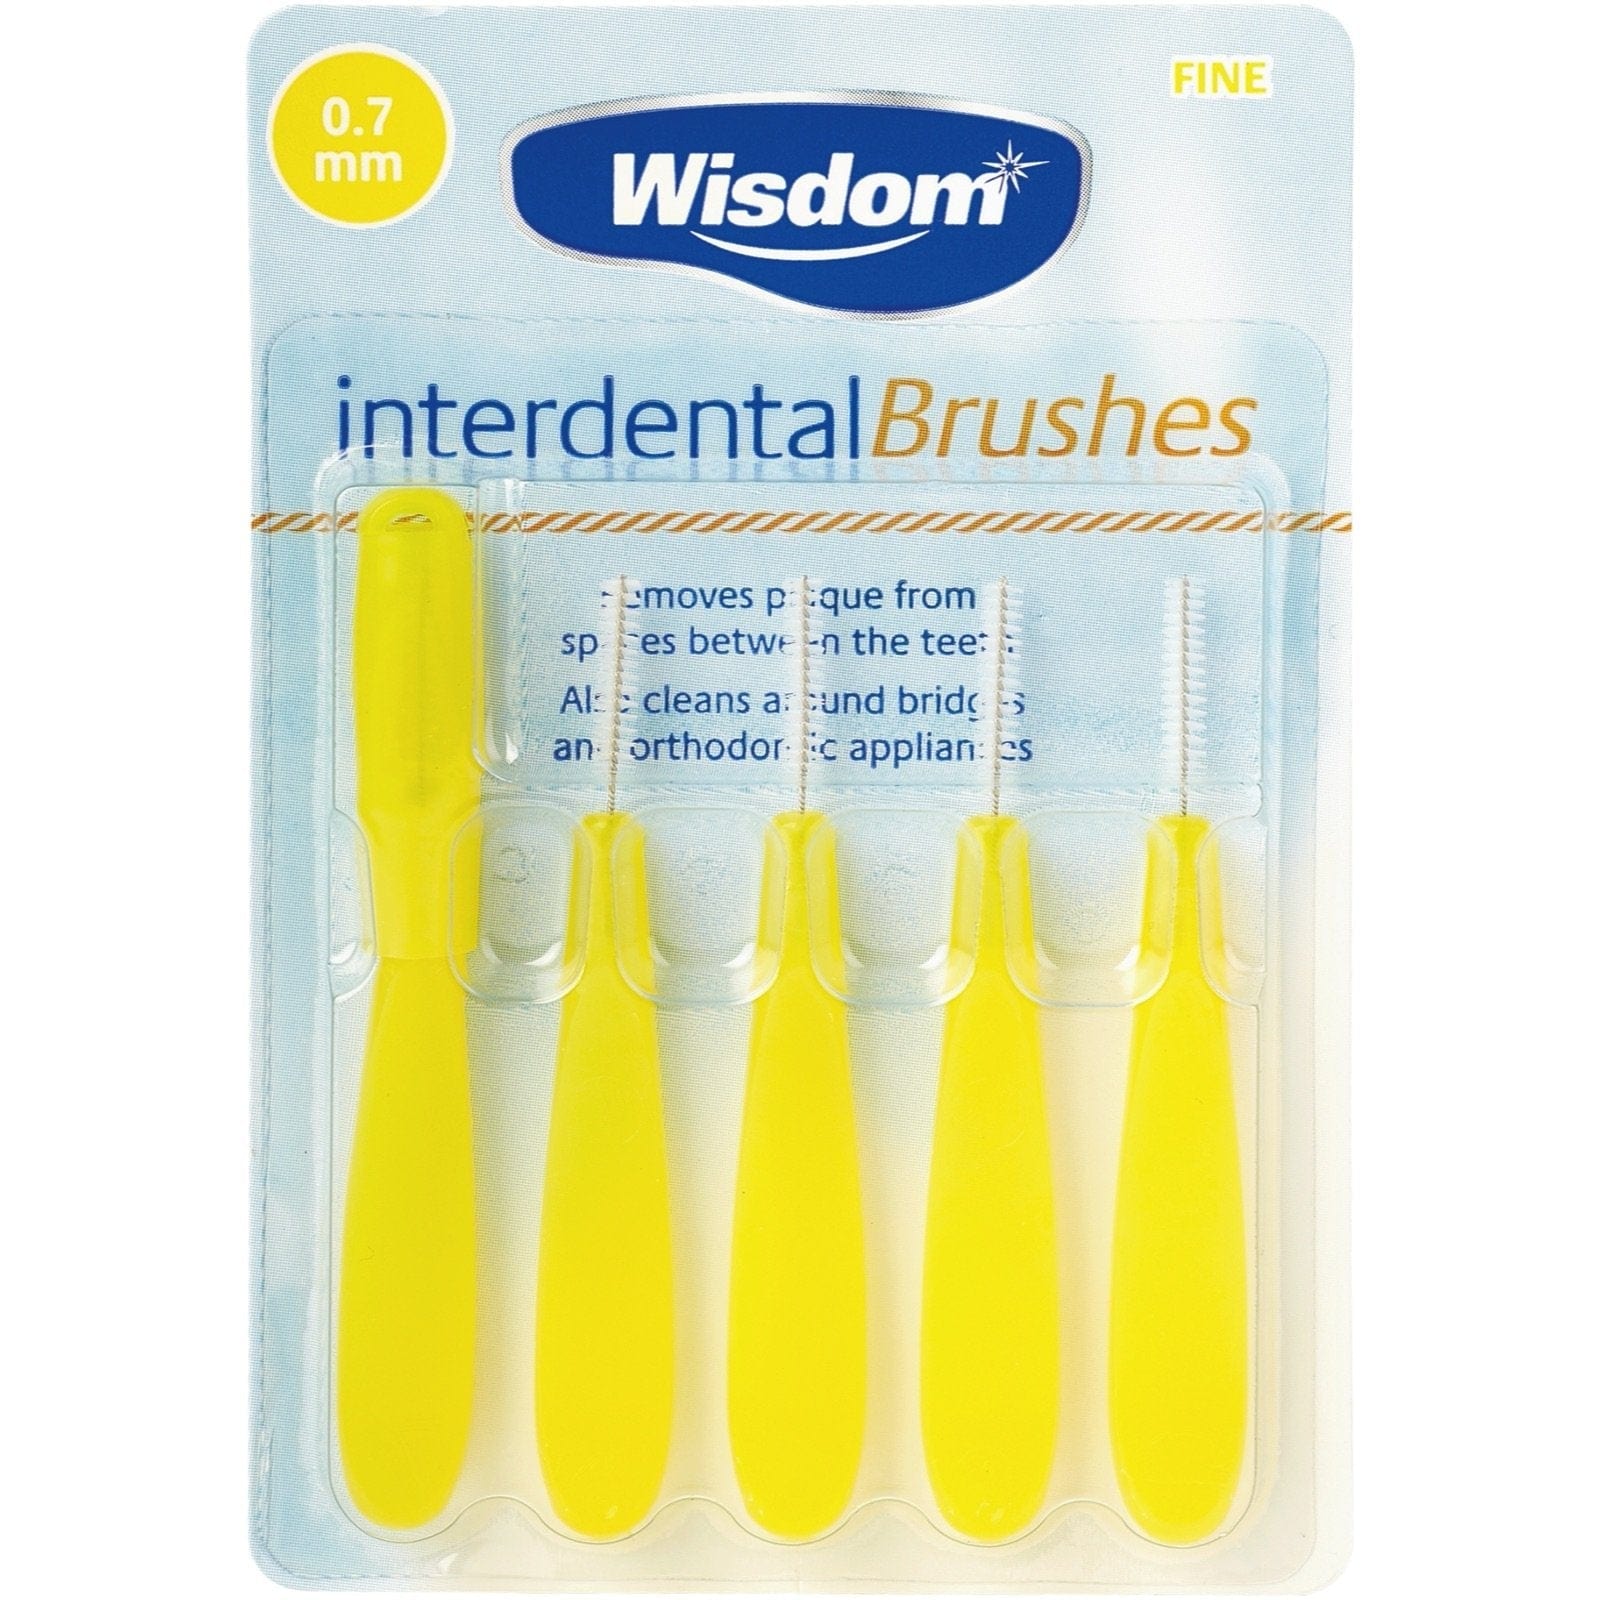 Wisdom Interdental Brush 0.7mm (Yellow) 5's